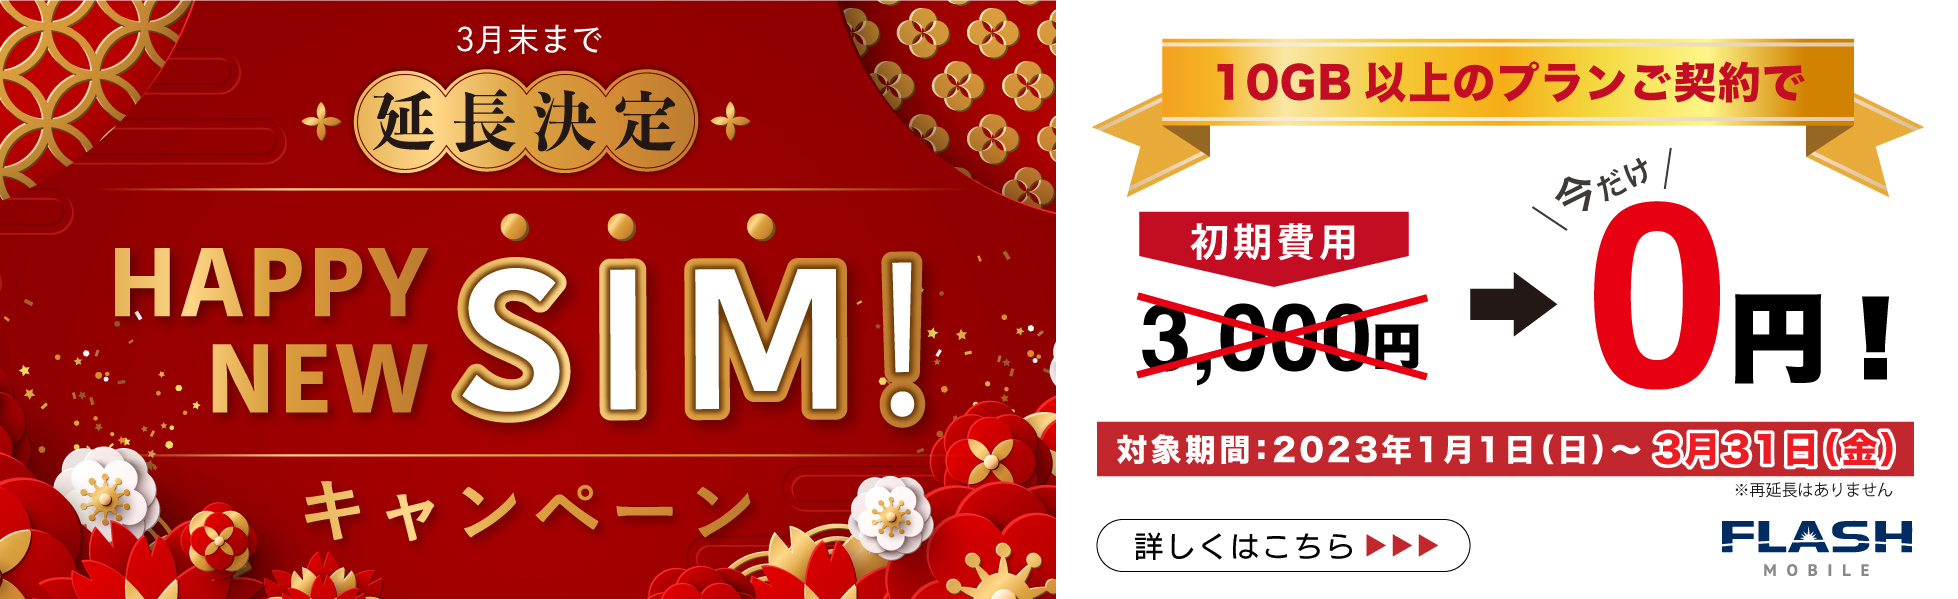 【延長】HAPPY NEW SIM! キャンペーン